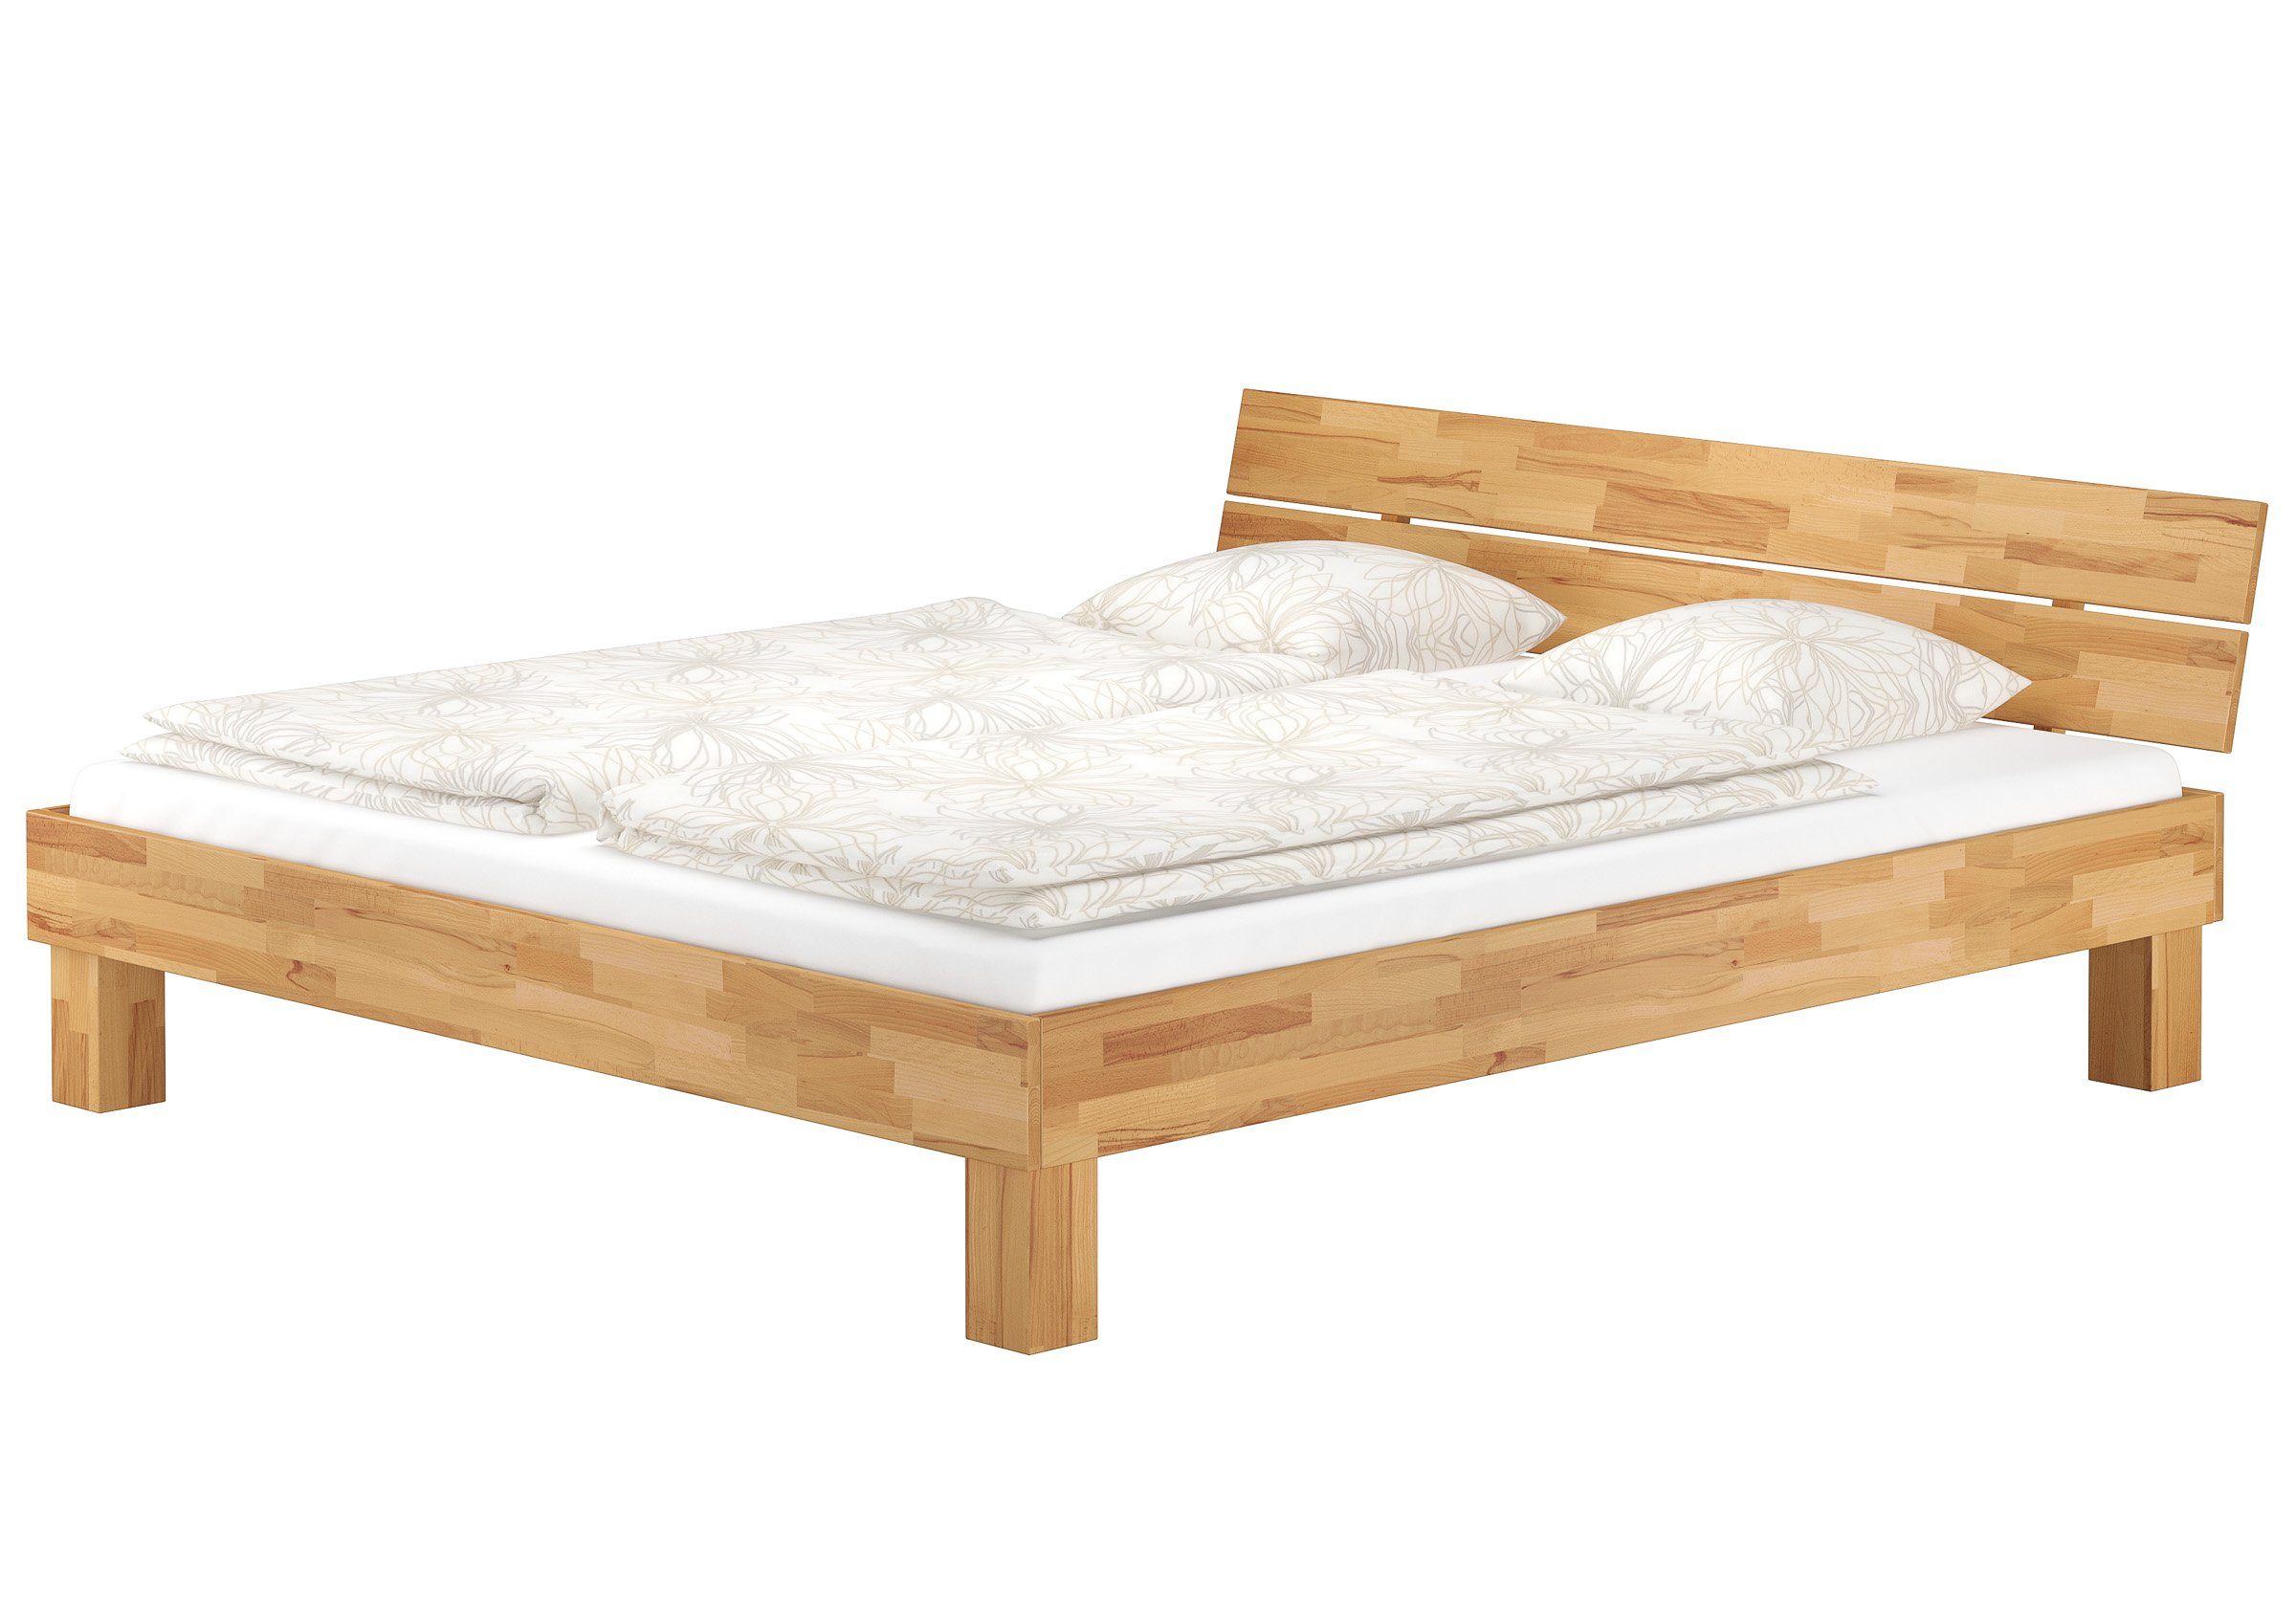 ERST-HOLZ Bett Doppelbett 180x200 mit Buchefarblos lackiert natur Buche Zubehör, wählbarem naturbelassen